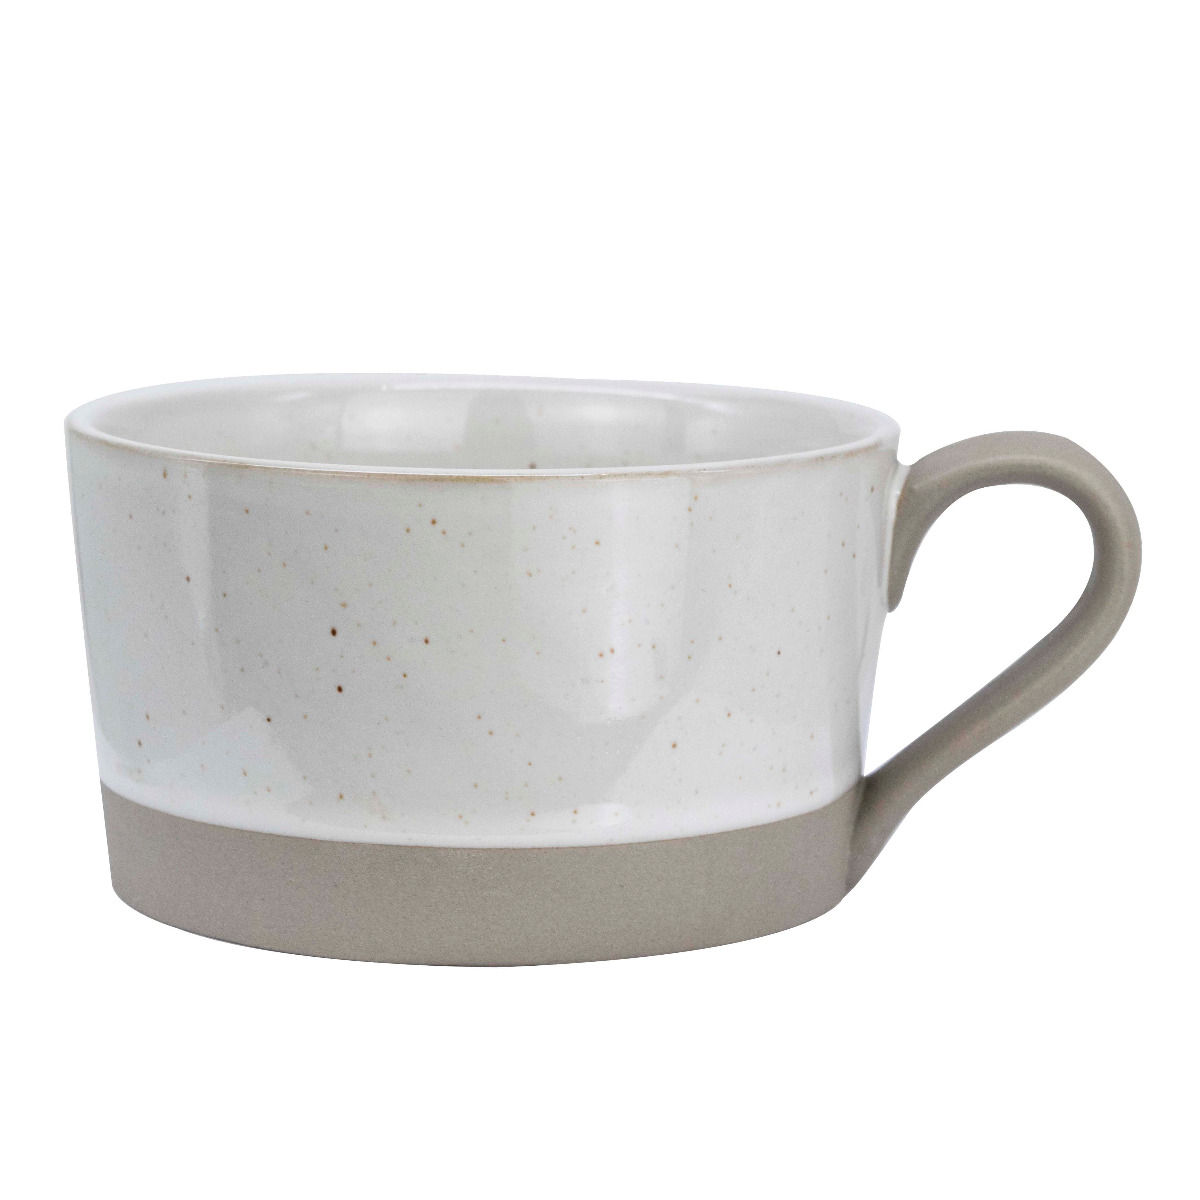 Coffee ceramic bowl e-338 white-KR011847